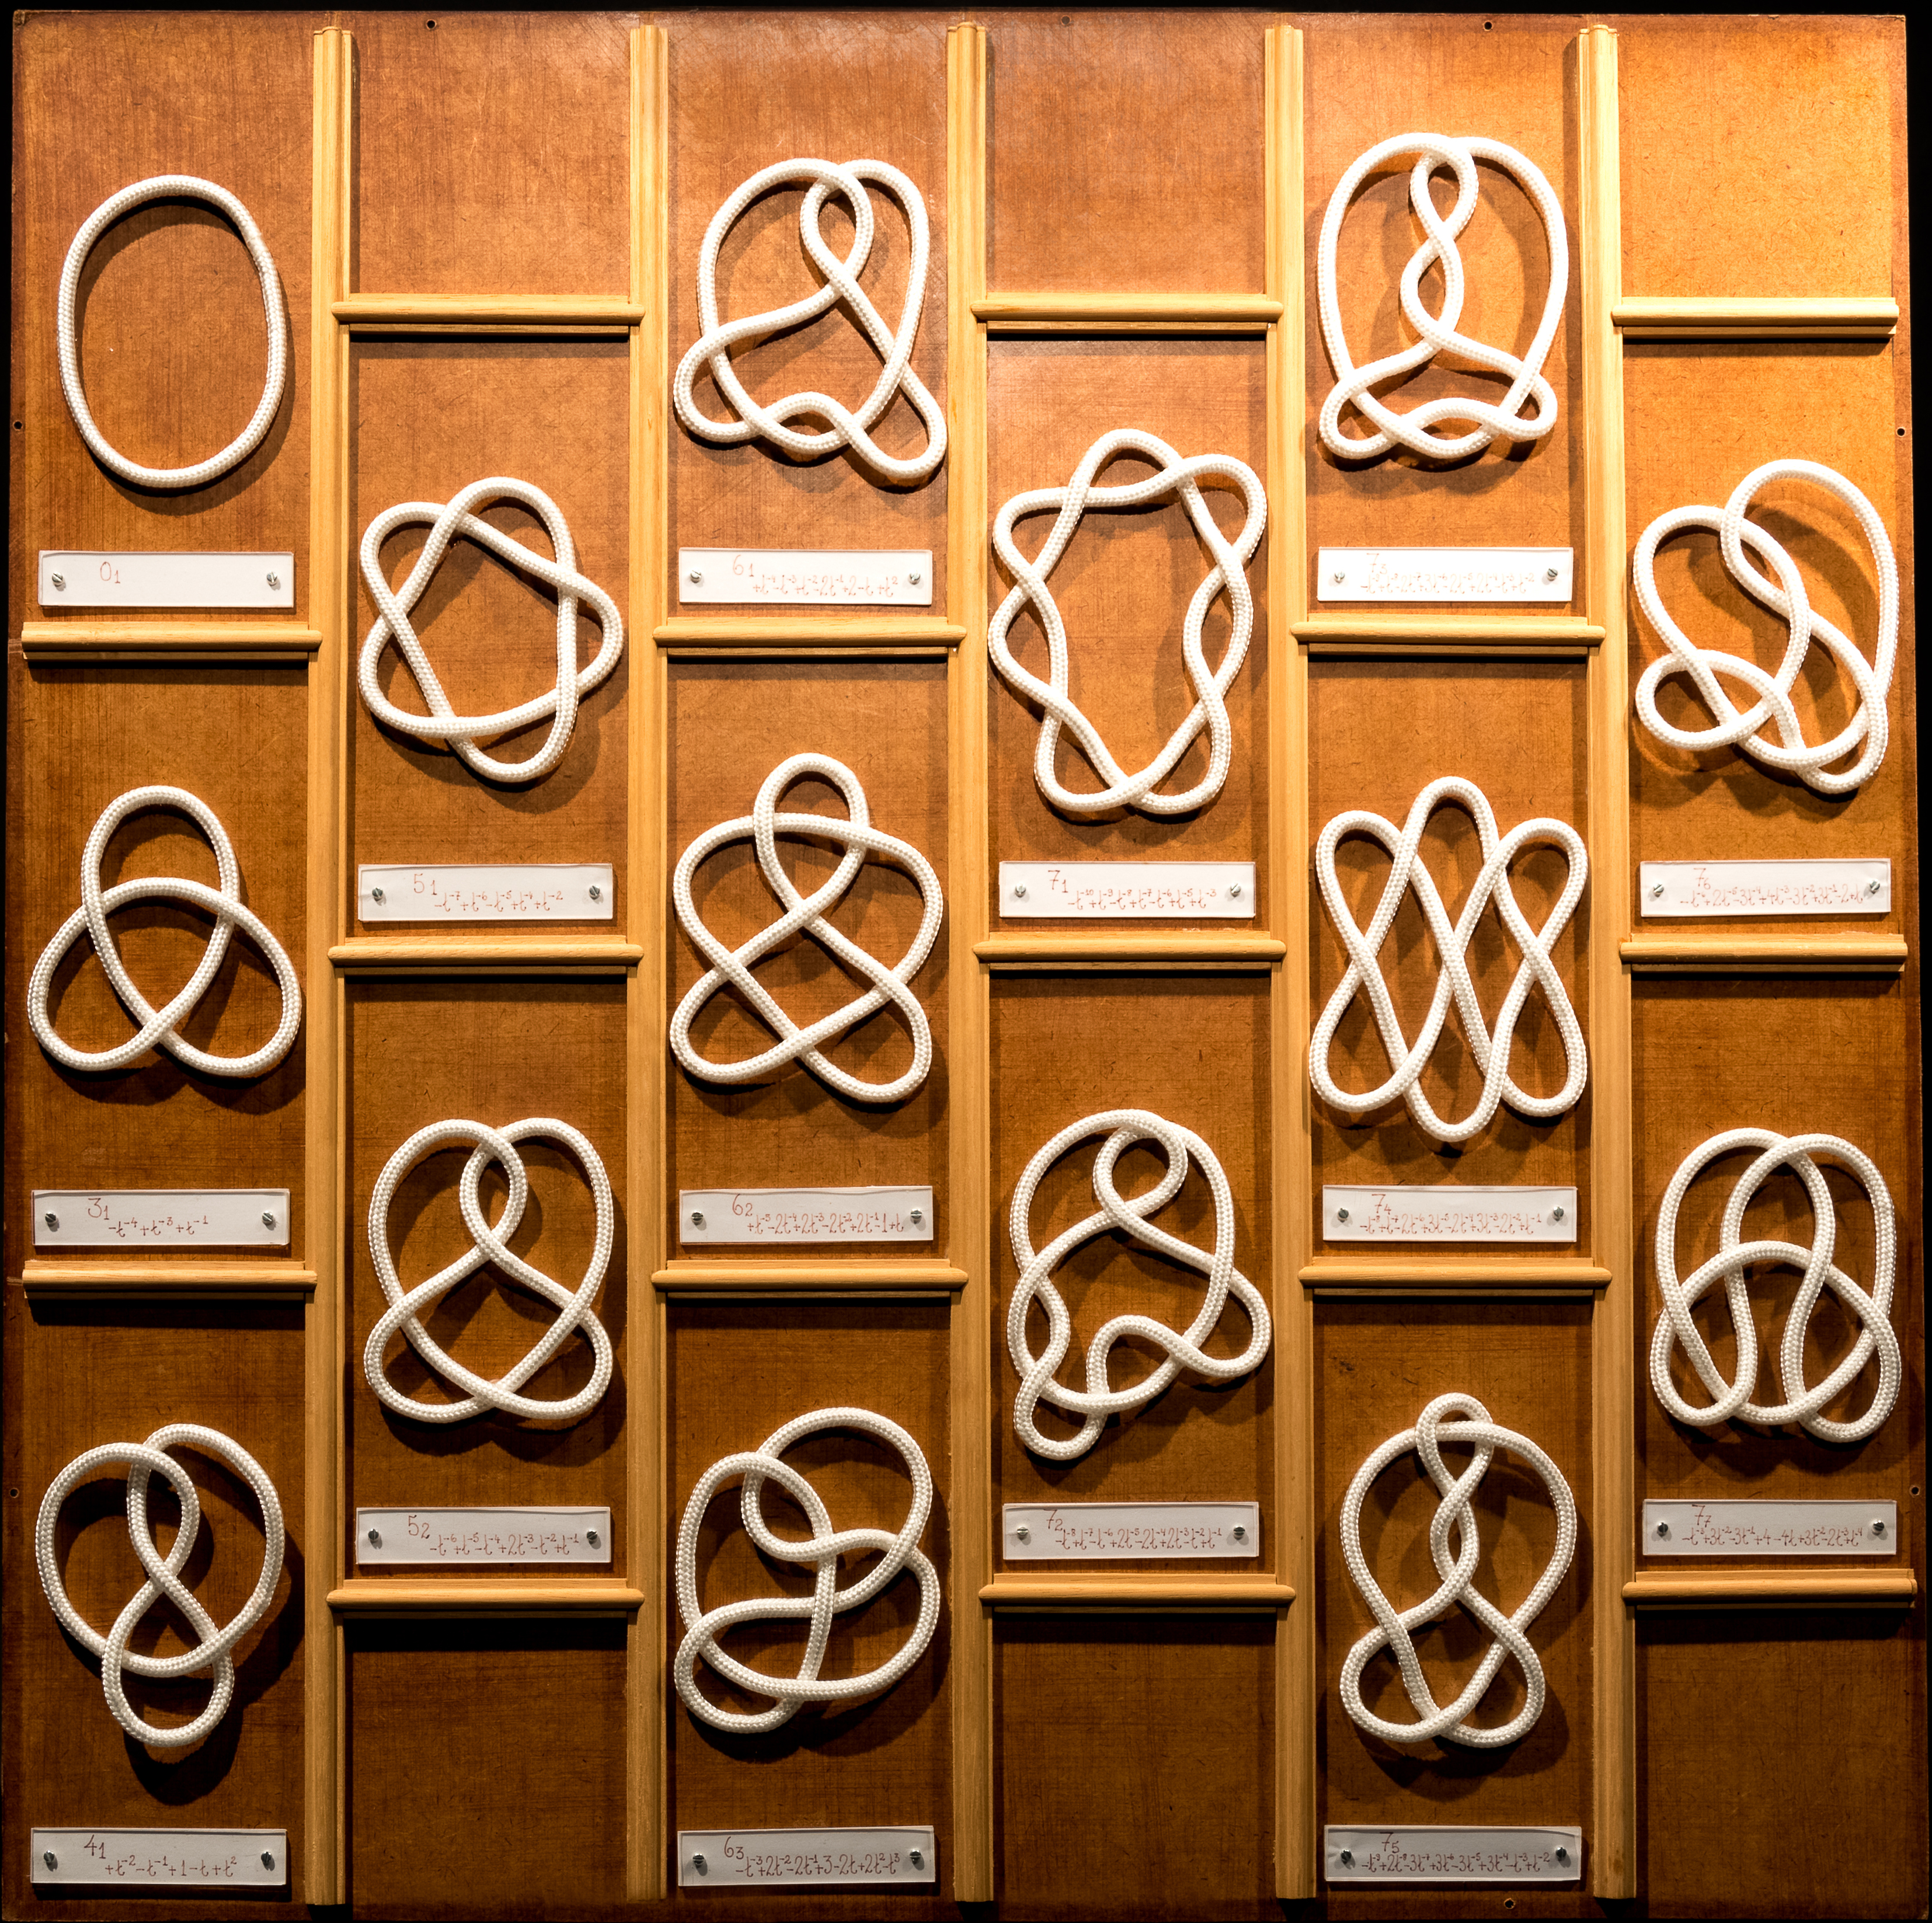 Figure Eight Knot -- from Wolfram MathWorld